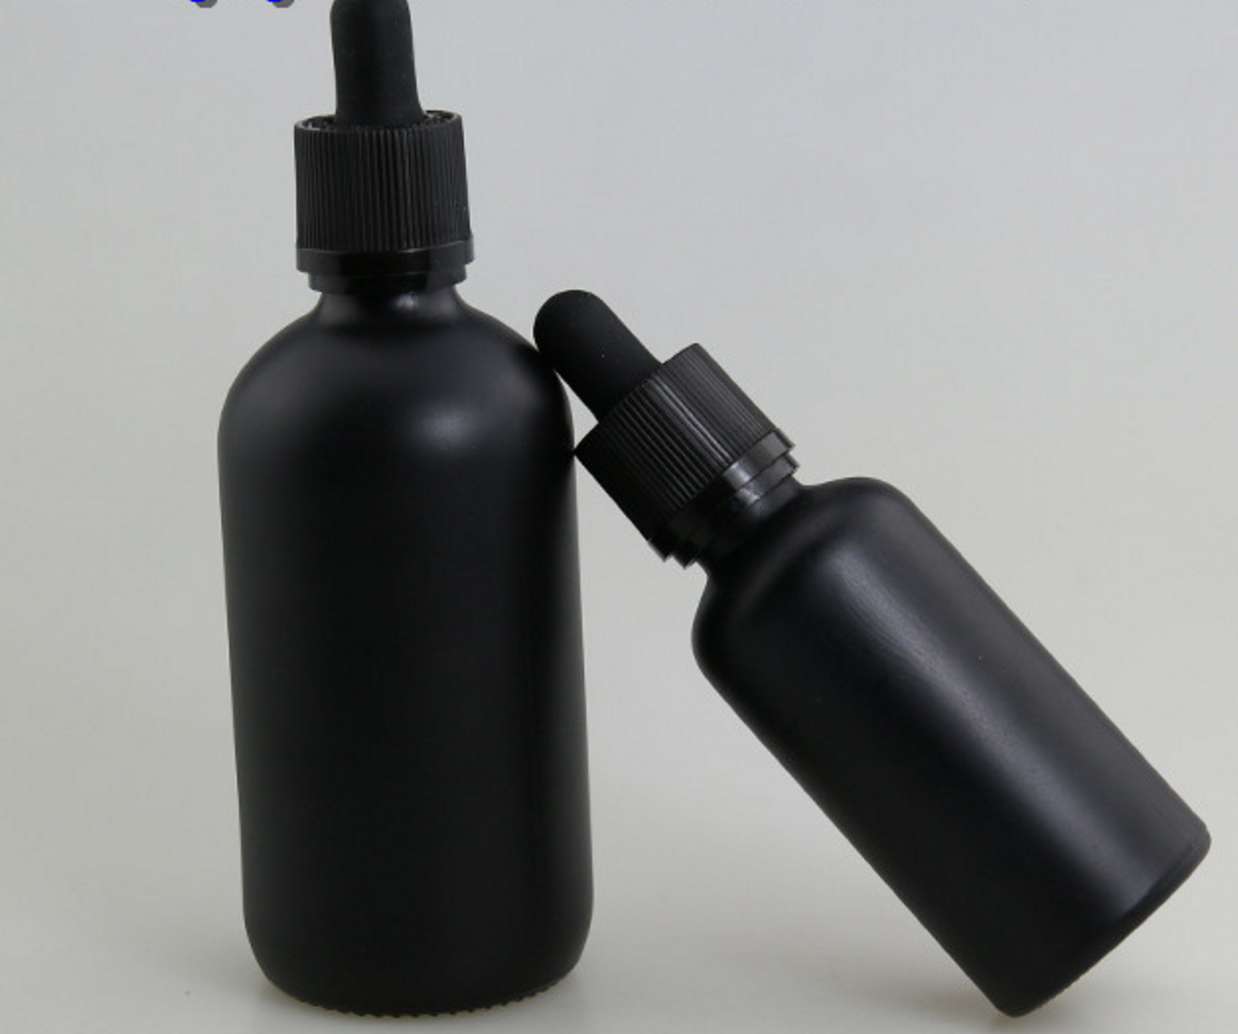 100ml facial oil black glass bottles